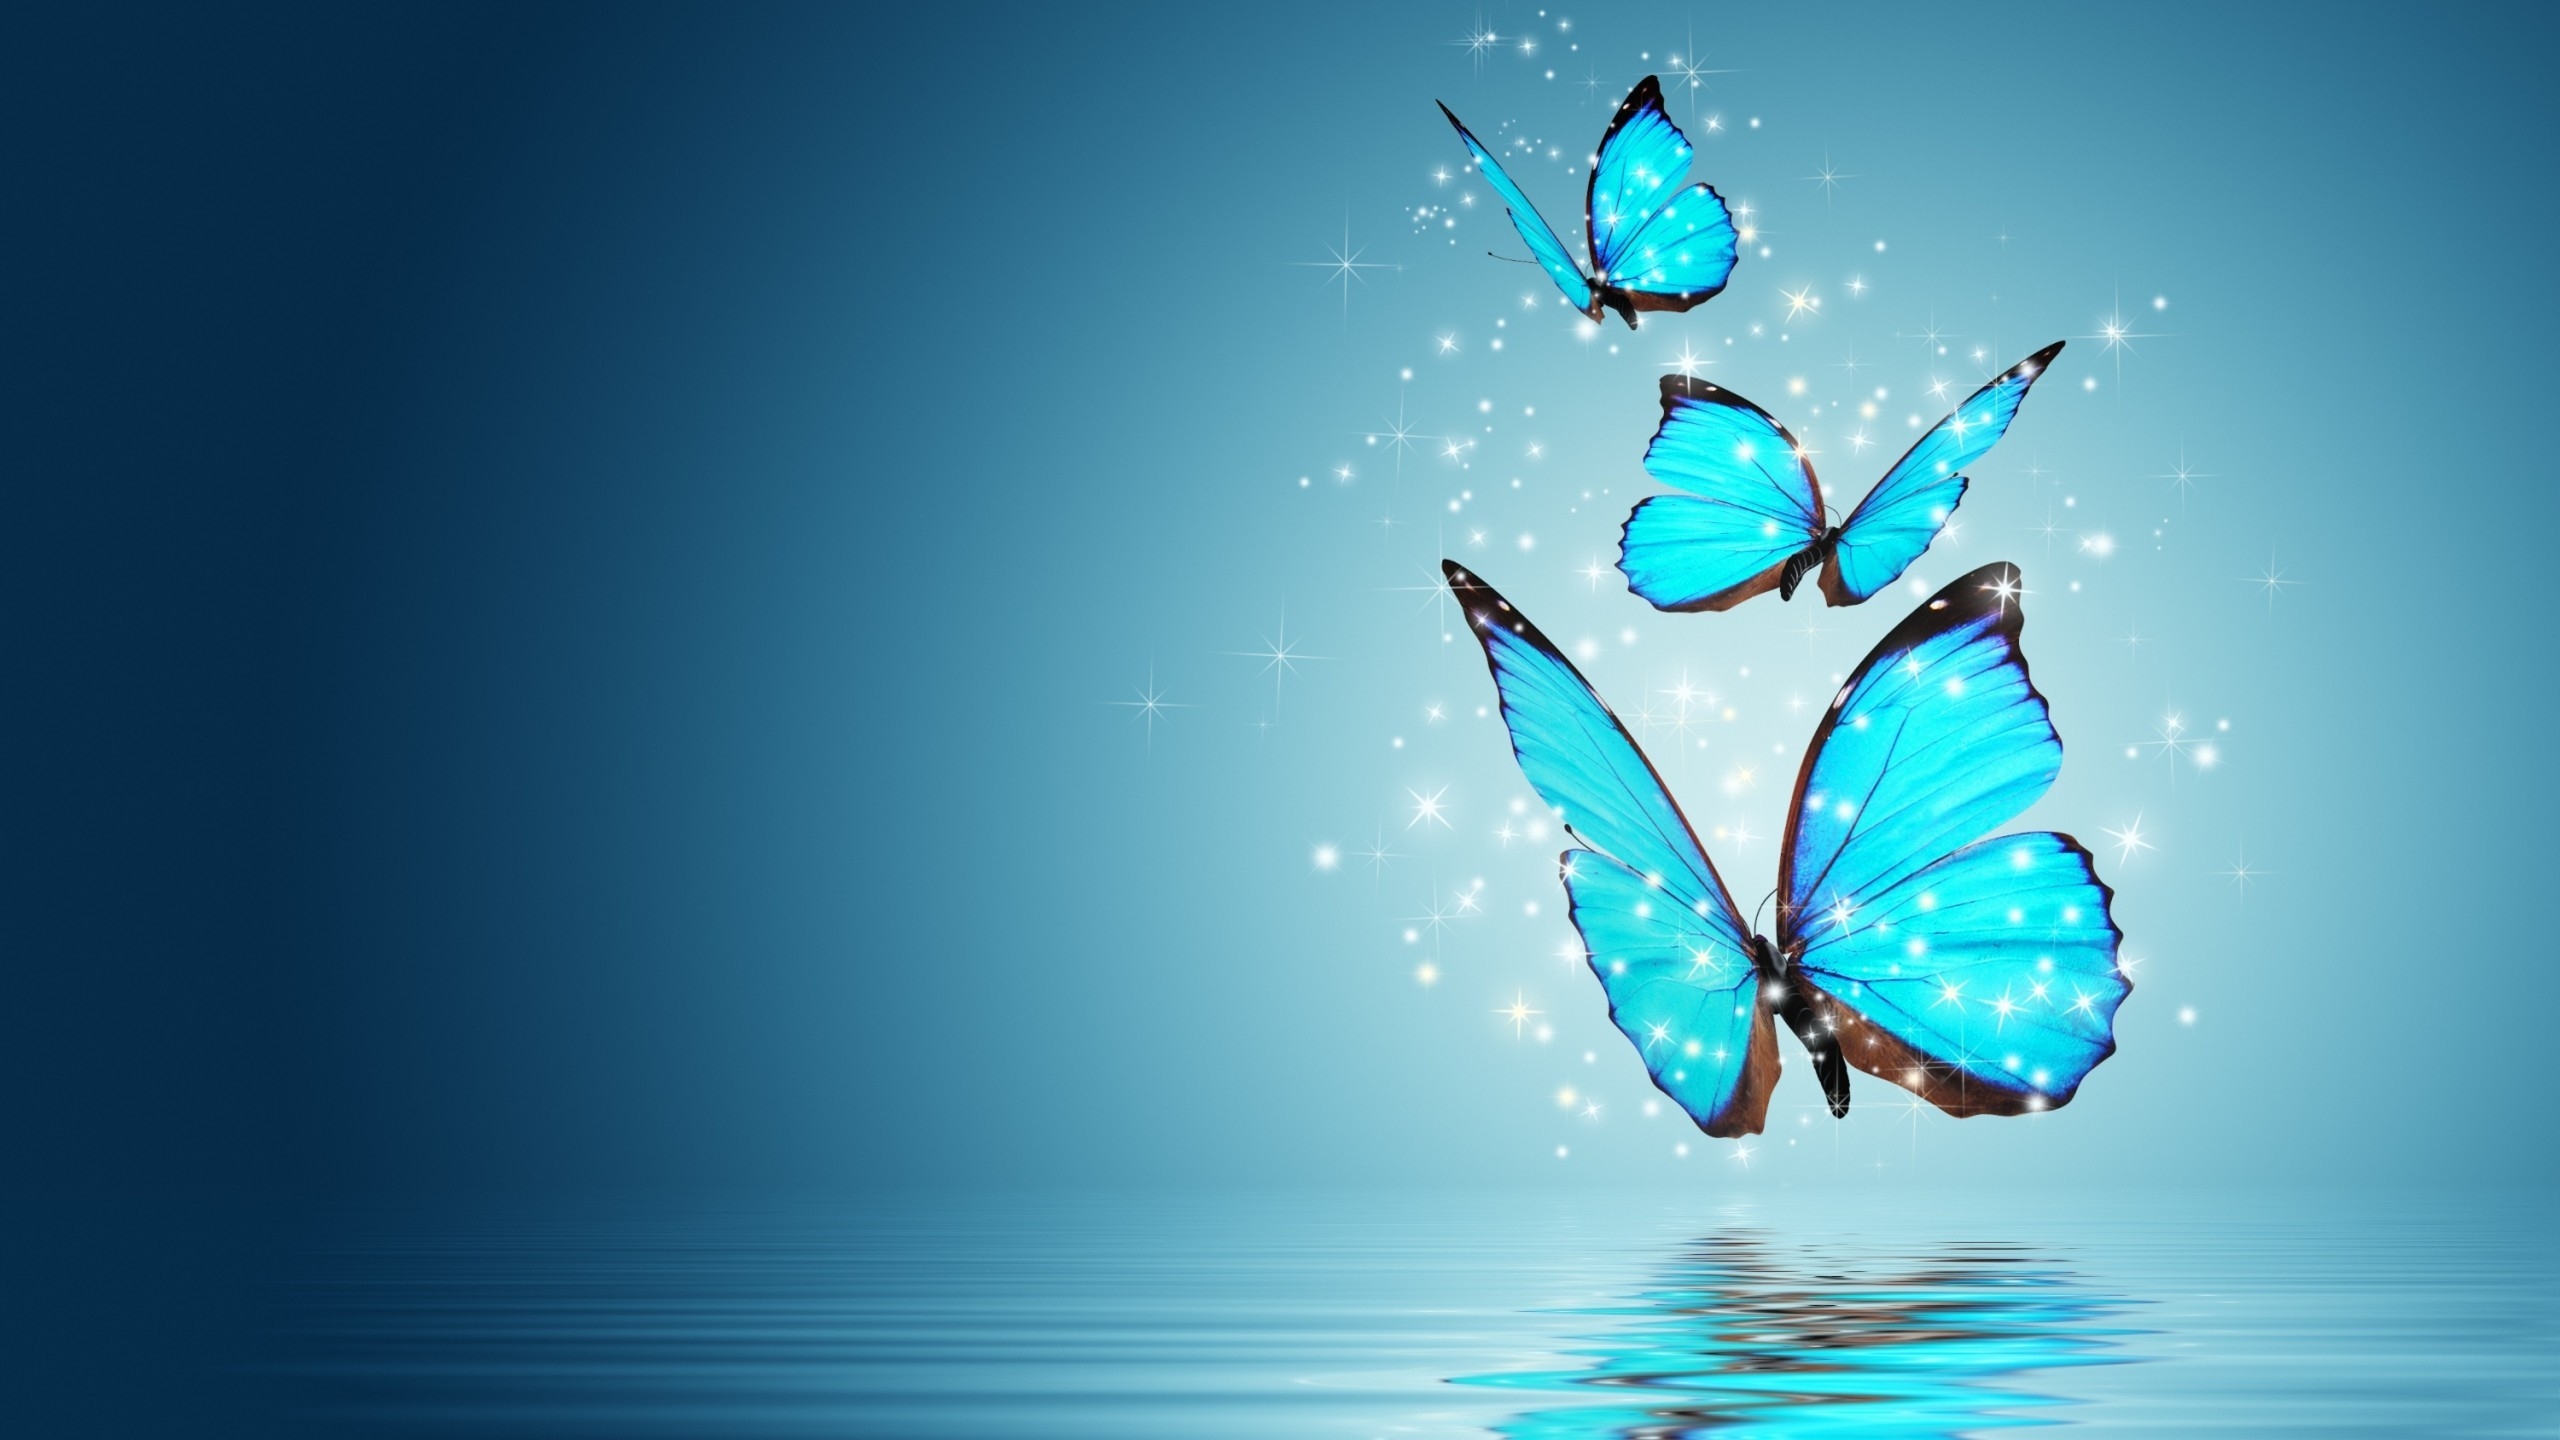 Blue Butterflies for 2560x1440 HDTV resolution